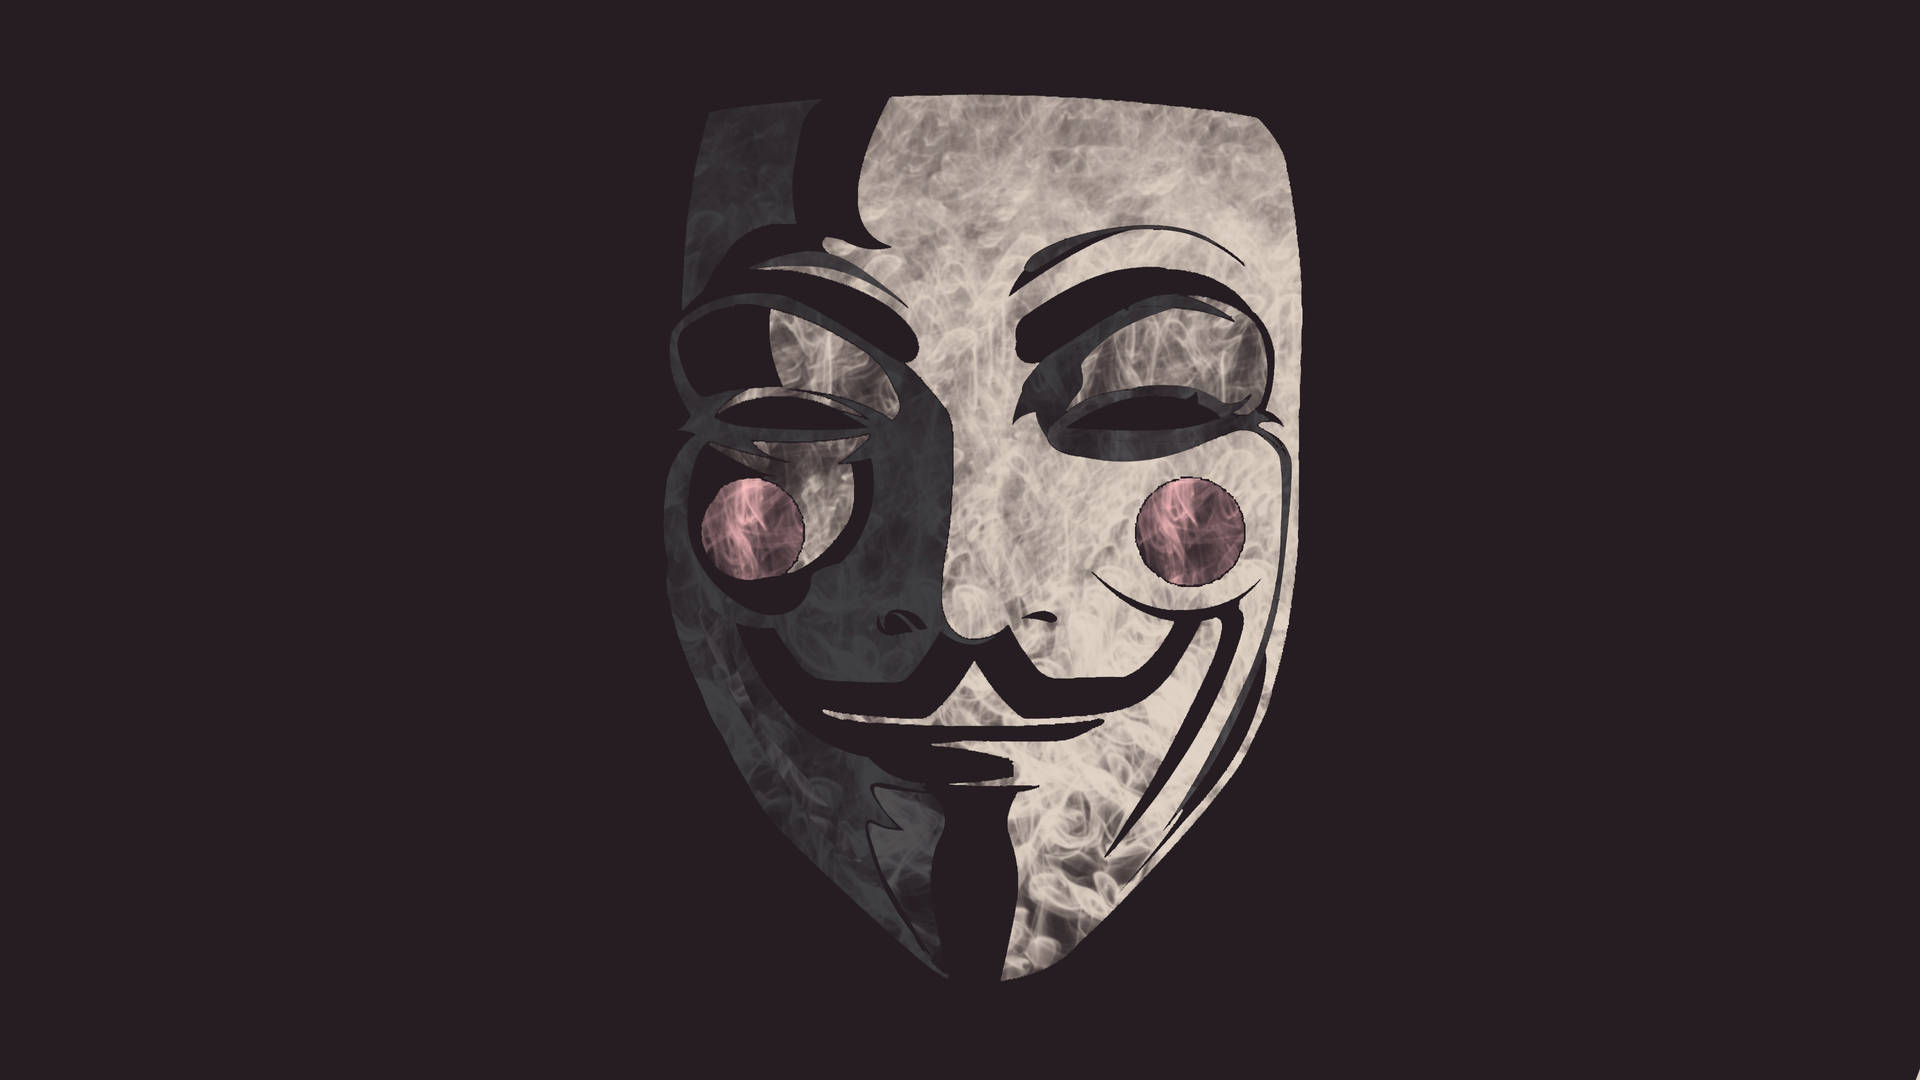 64kultra Hd Hacker Anonymous V - 64k Ultra Hd Hacker Anonymous V Wallpaper